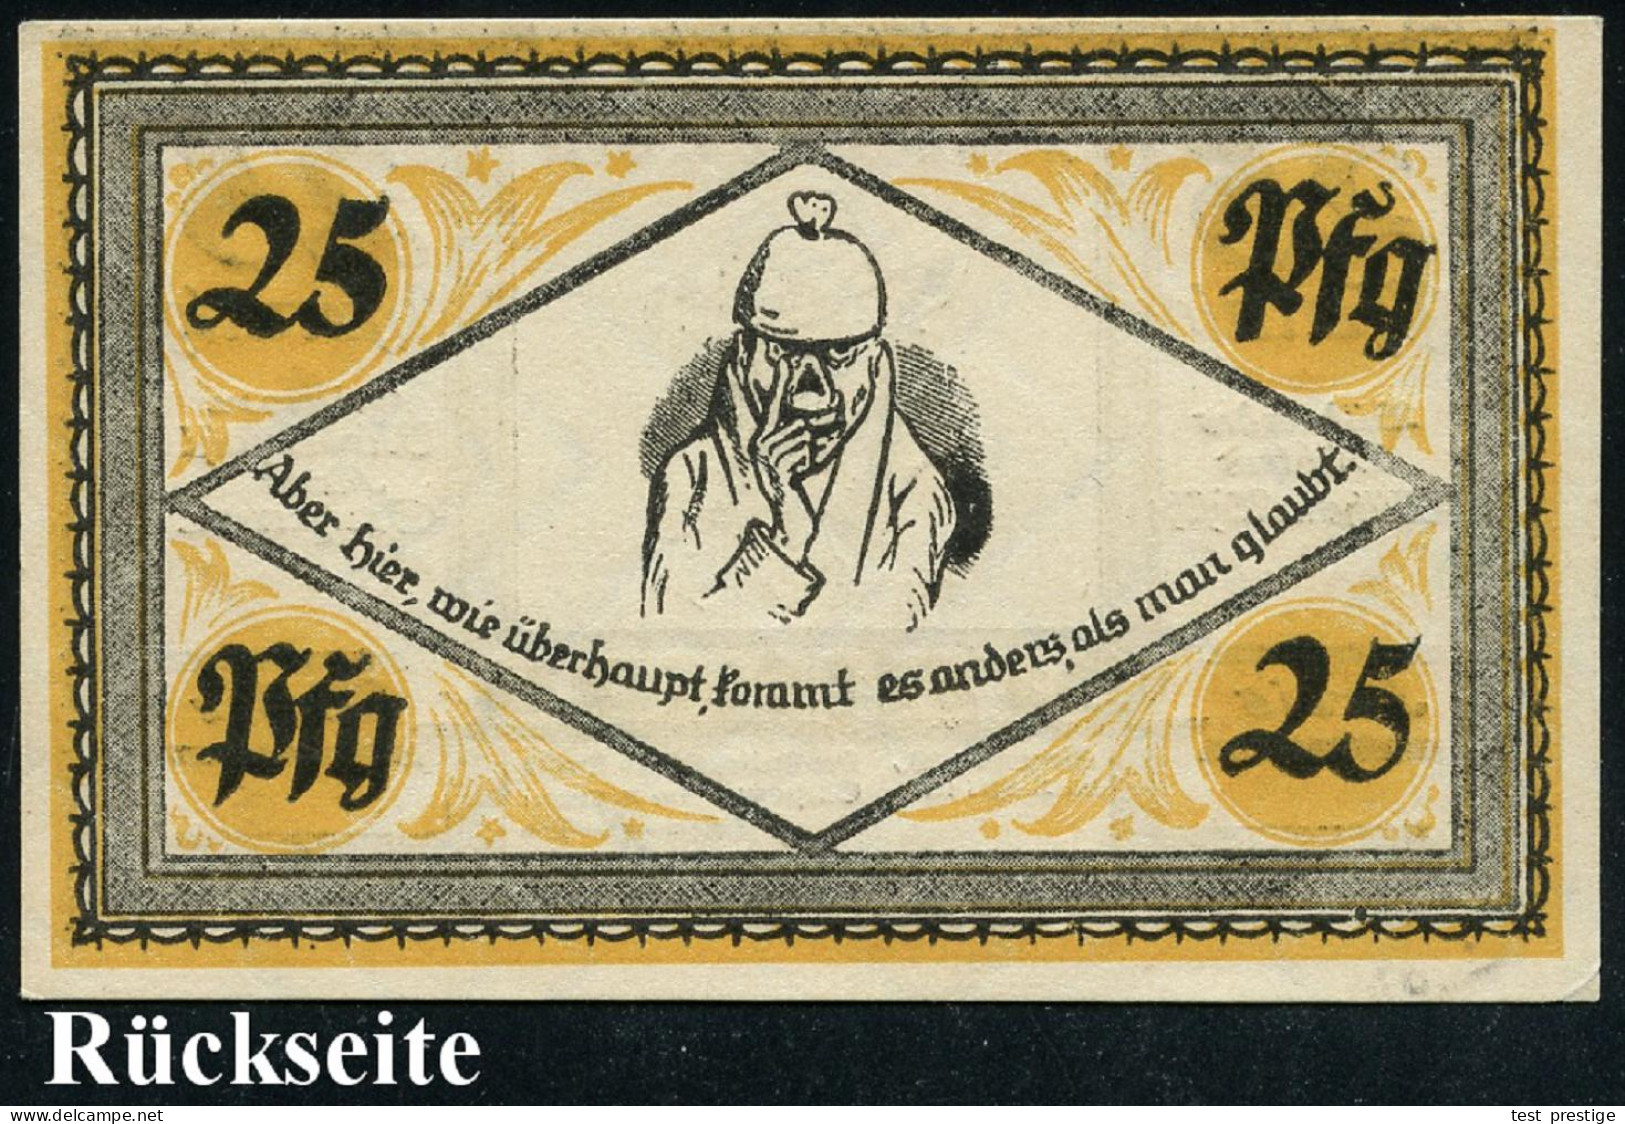 Stolzenau 1921 (Apr.) Infla-Notgeldschein 25 Pf. Mit Portrait Von Wilh. Busch (Selbstportrait Etc.) Bankfrisch - DEUTSCH - Schriftsteller